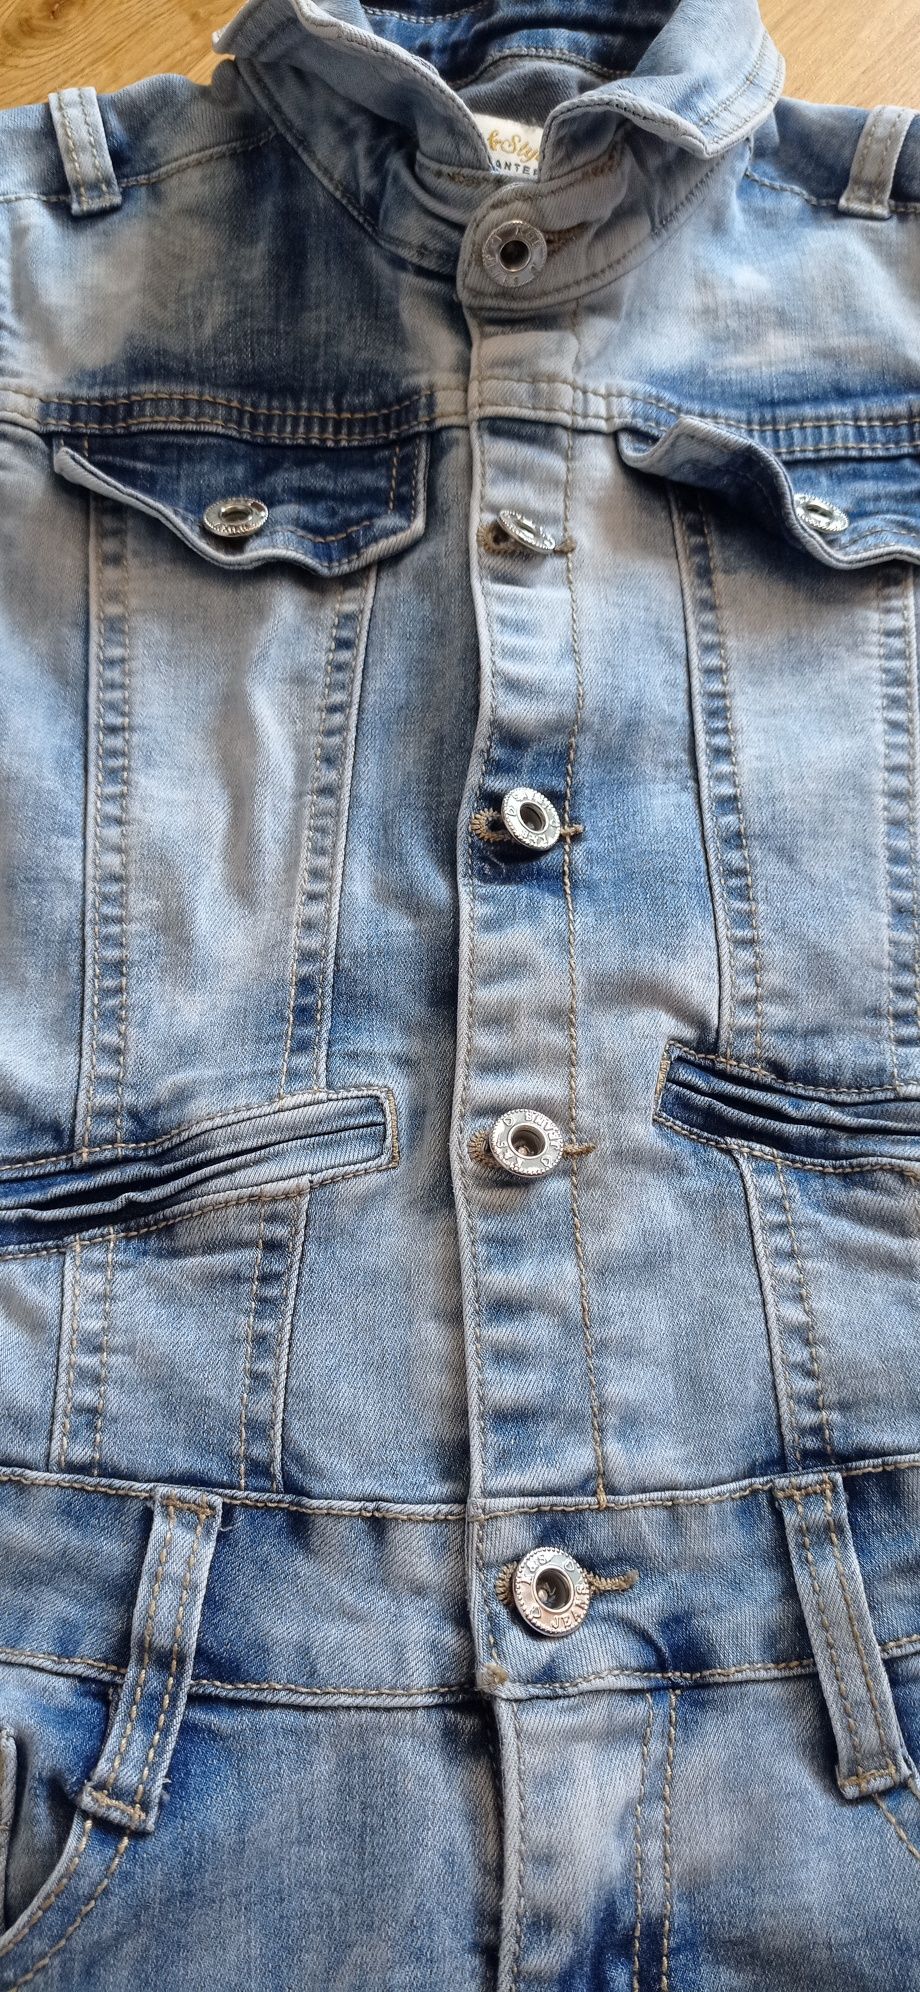 US Kids & Styl jasnoniebieski jeansowy kombinezon dziewczęcy r. 8 lat